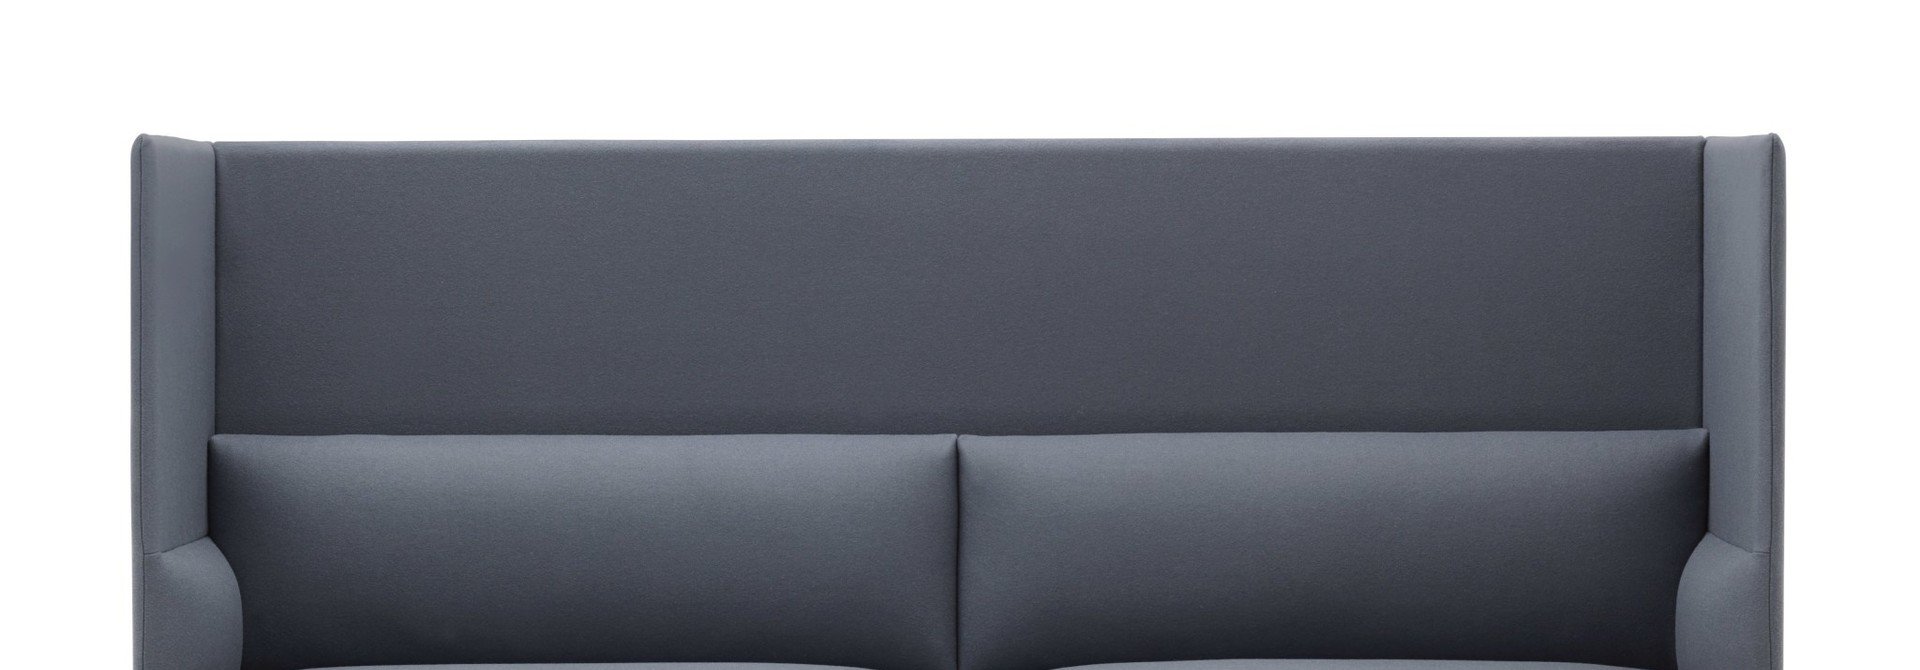 Outline Highback Sofa 3-seater black base